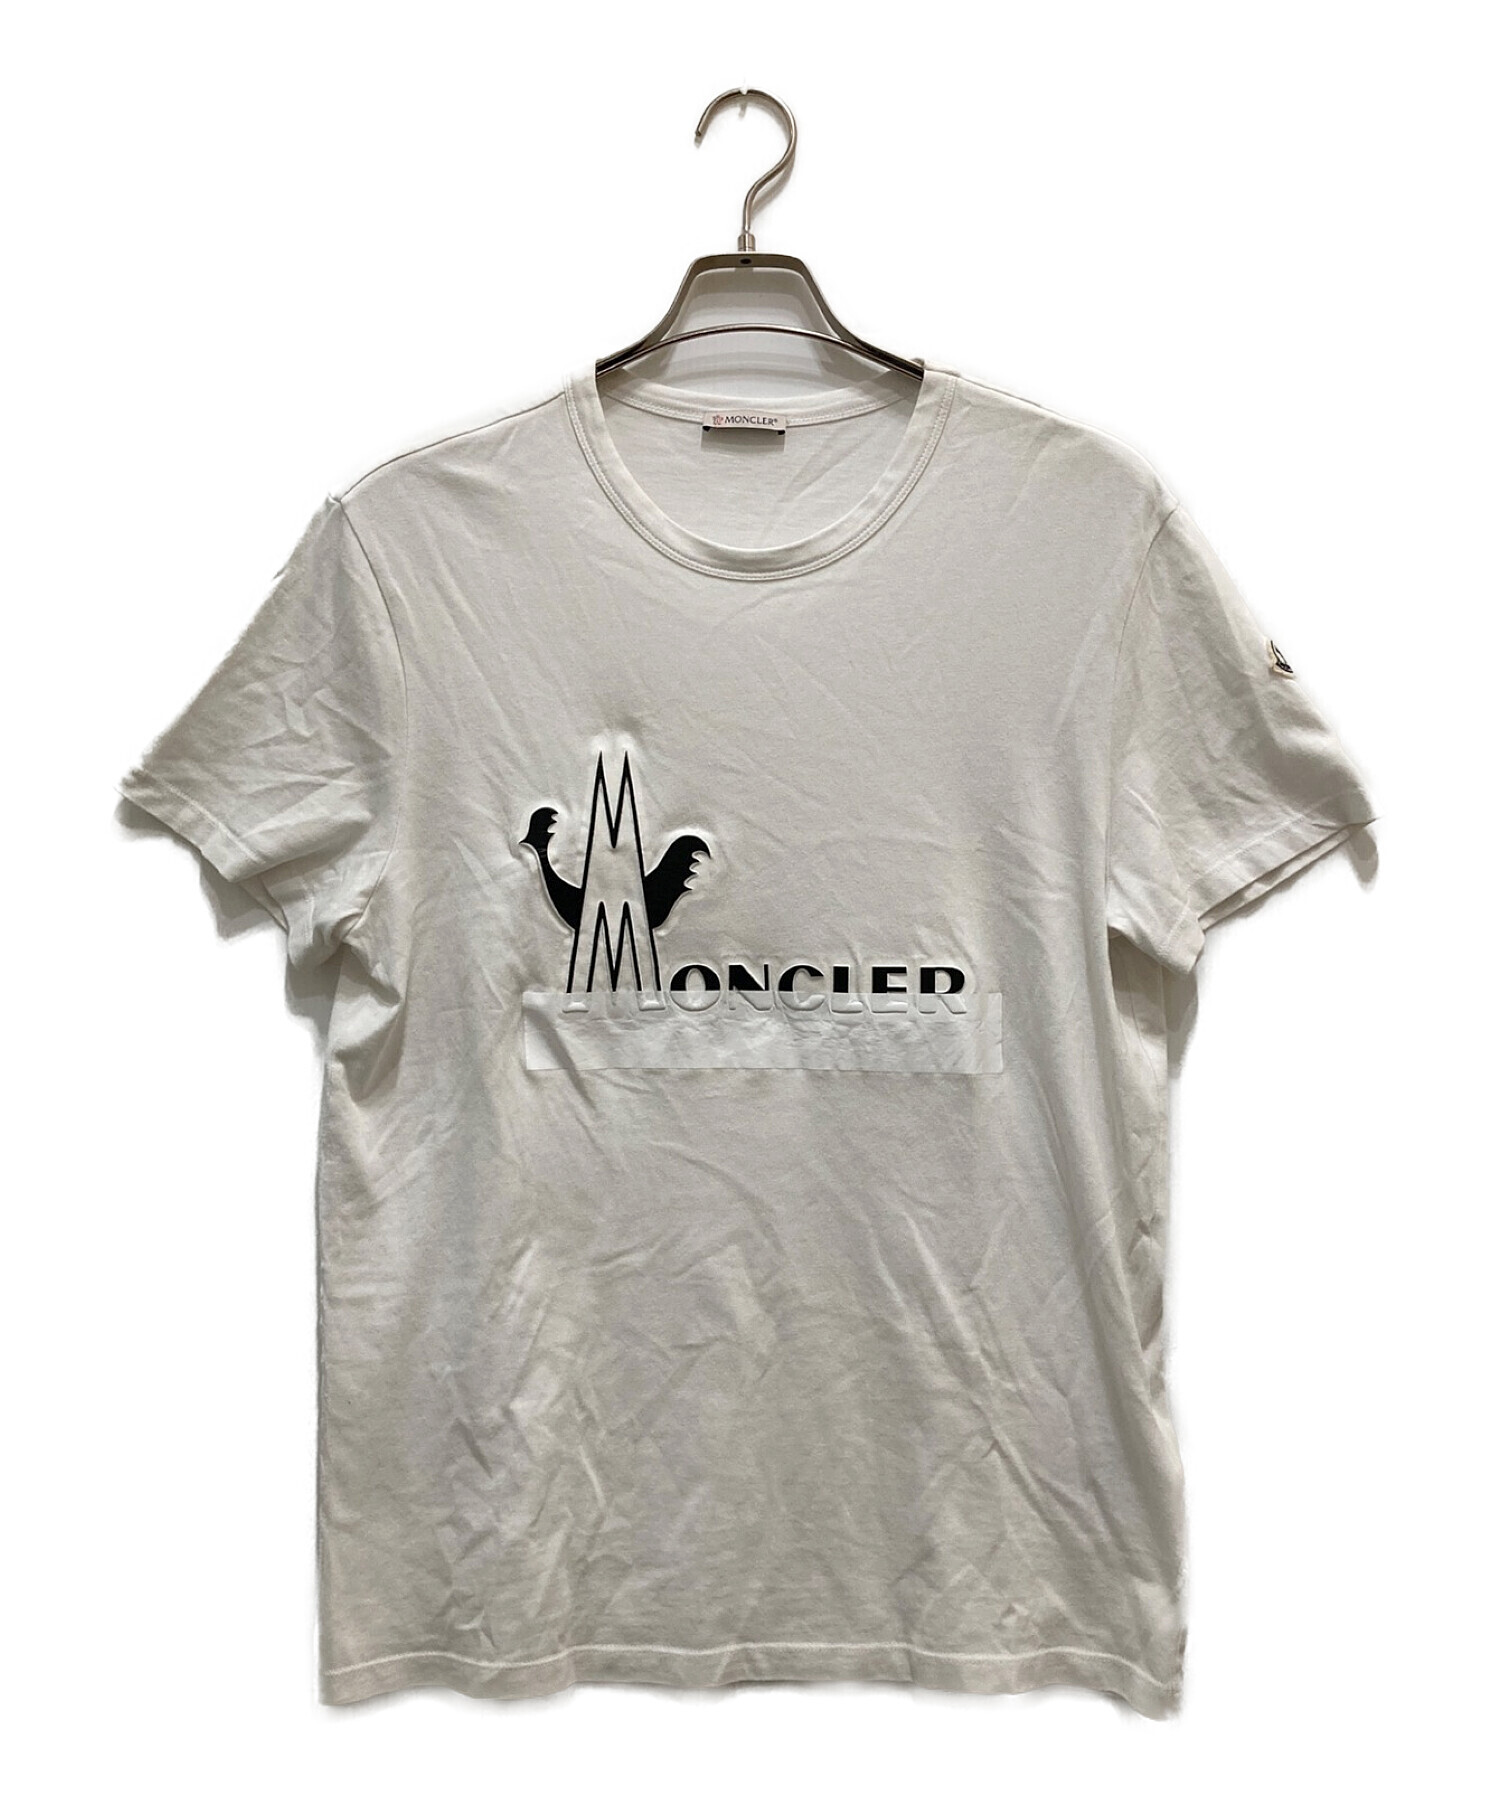 MONCLER (モンクレール) ロゴTシャツ ホワイト サイズ:M